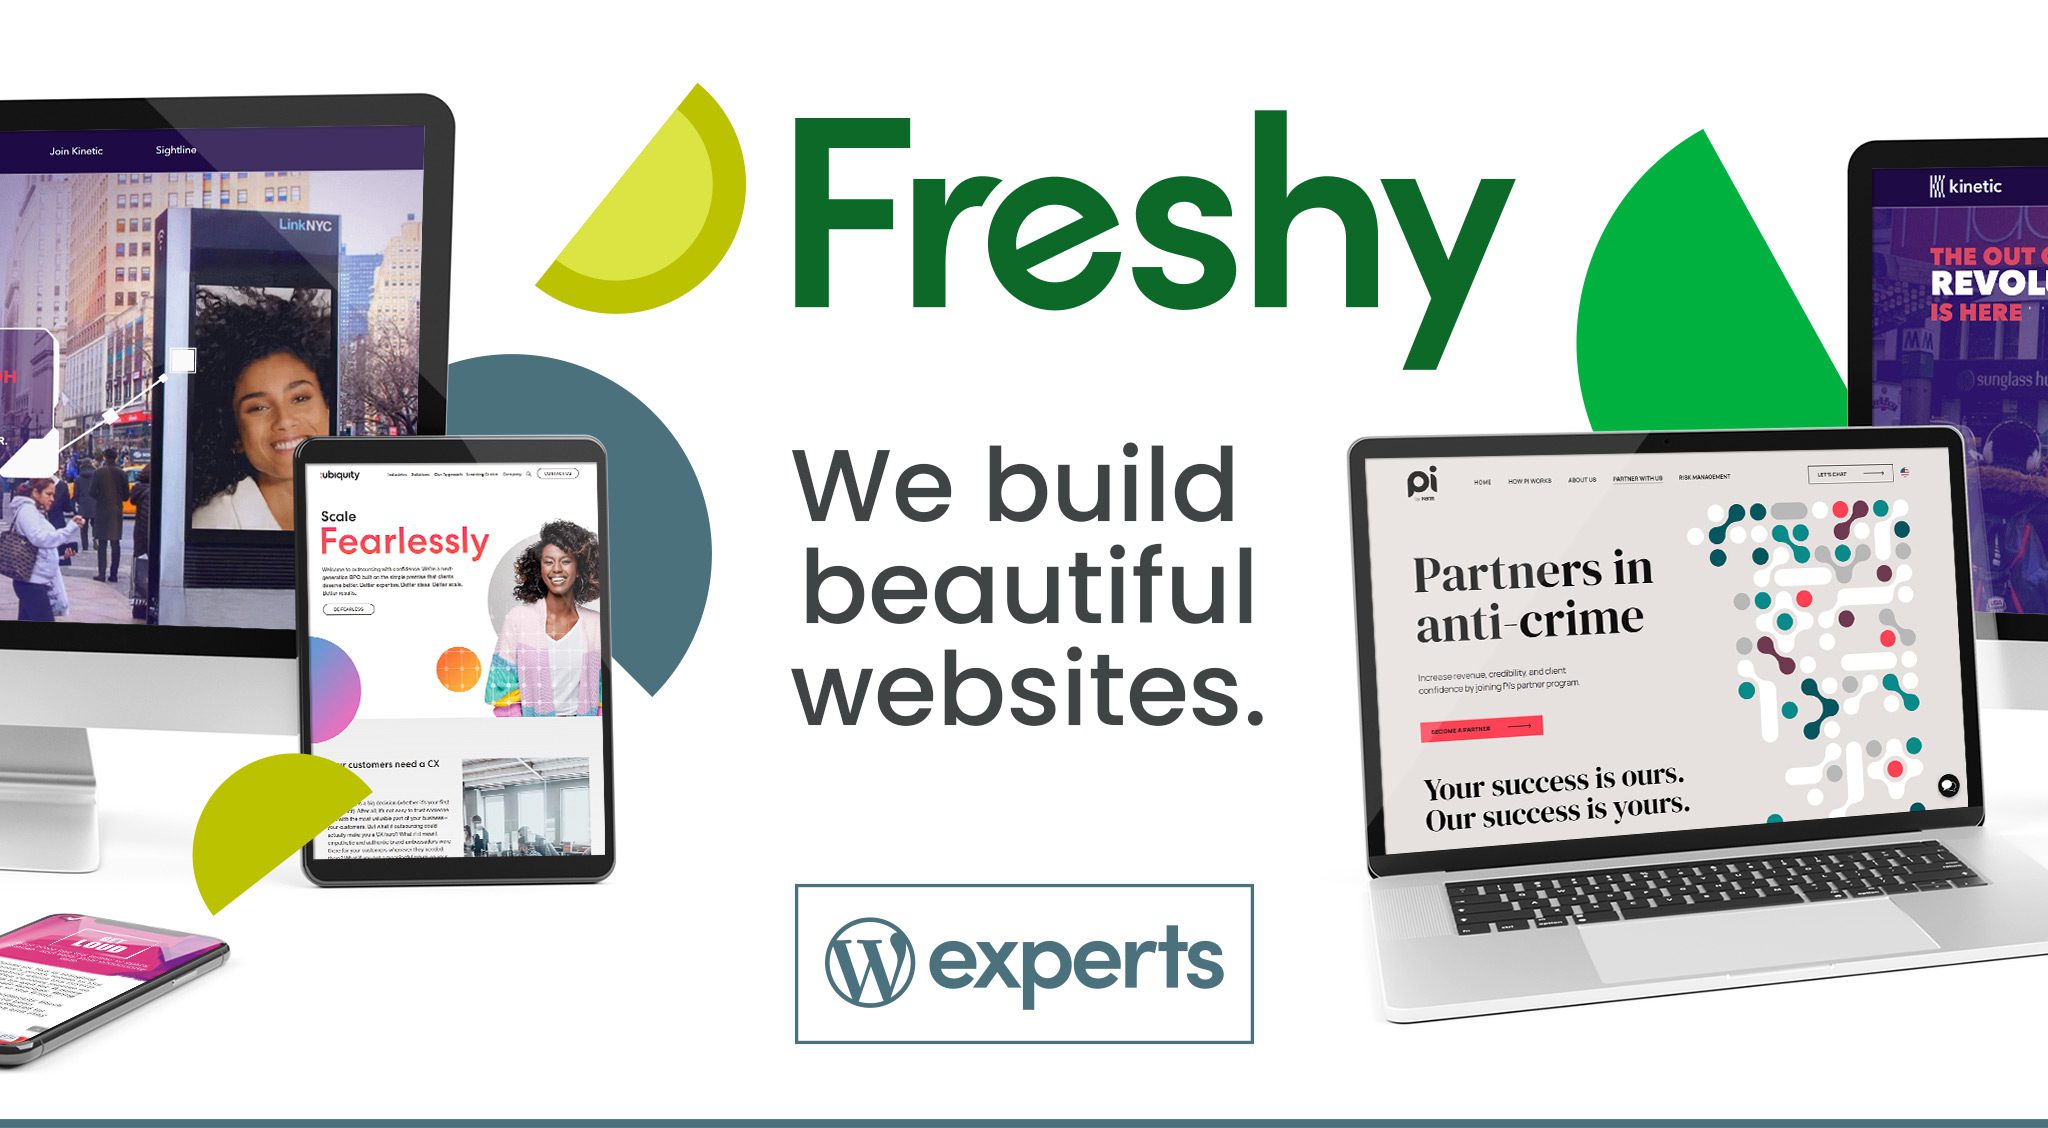 We build beautiful websites.